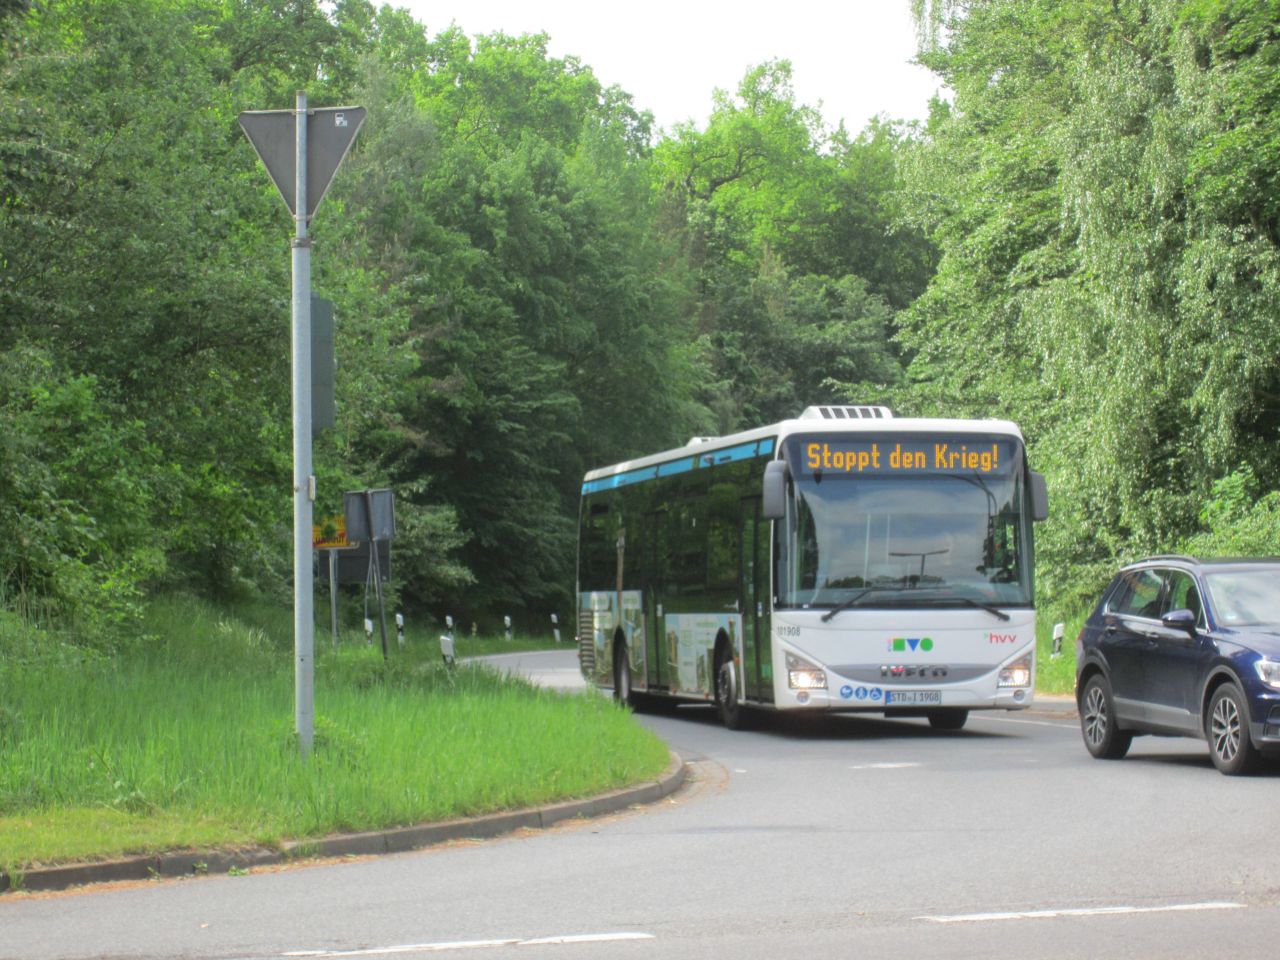 Bus der KVG mit dem Schriftzug "Stoppt den Krieg!", 20. Mai 2022. Foto: Lünepedia - https://www.luenepedia.de/wiki/Datei:Bus_Stoppt_den_Krieg.jpg.